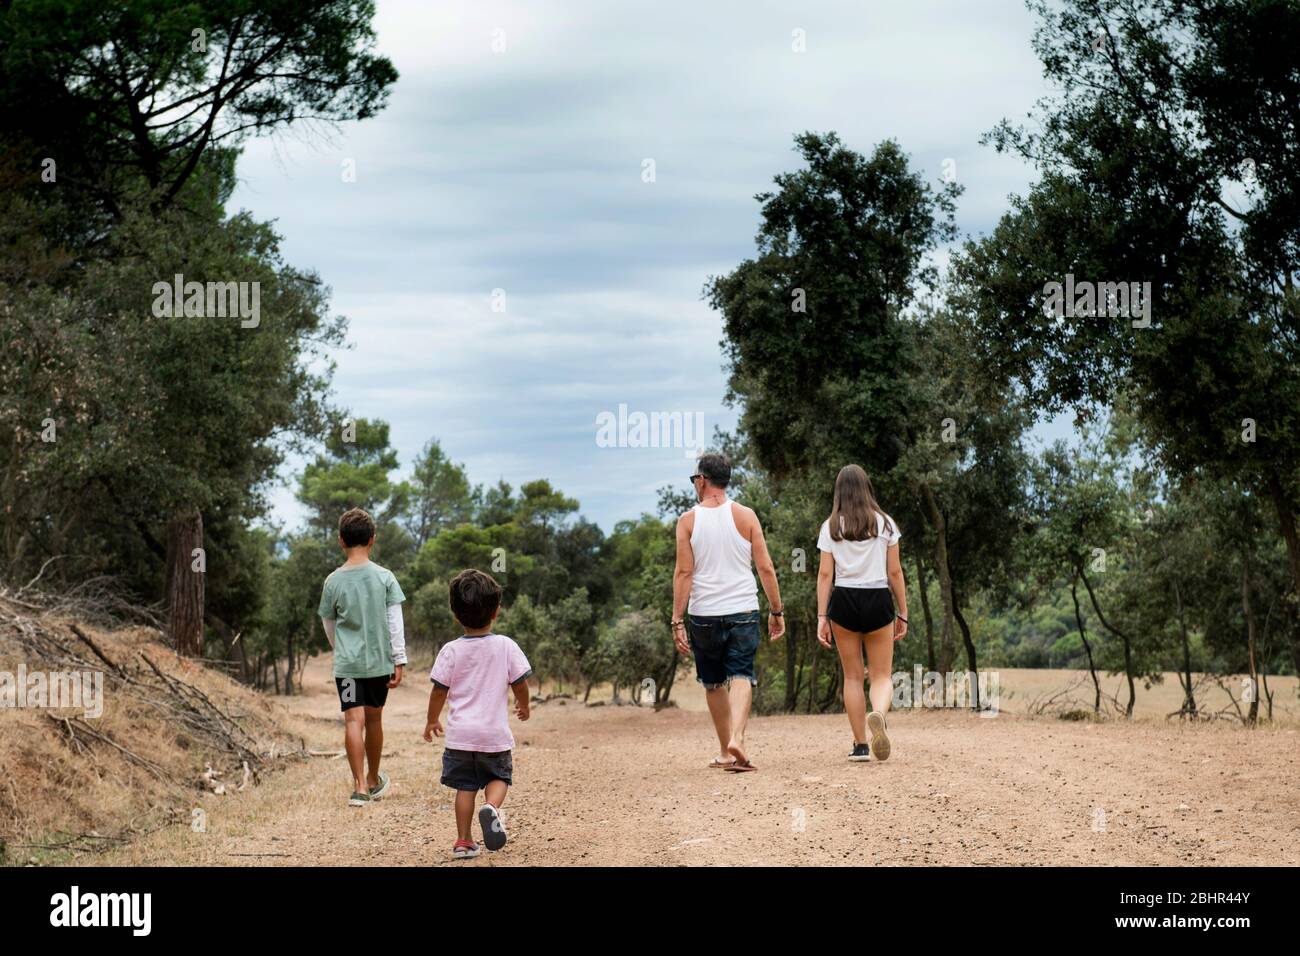 Rückansicht der Familie mit zwei Kindern, die auf einem Feldweg durch einen Wald laufen. Stockfoto